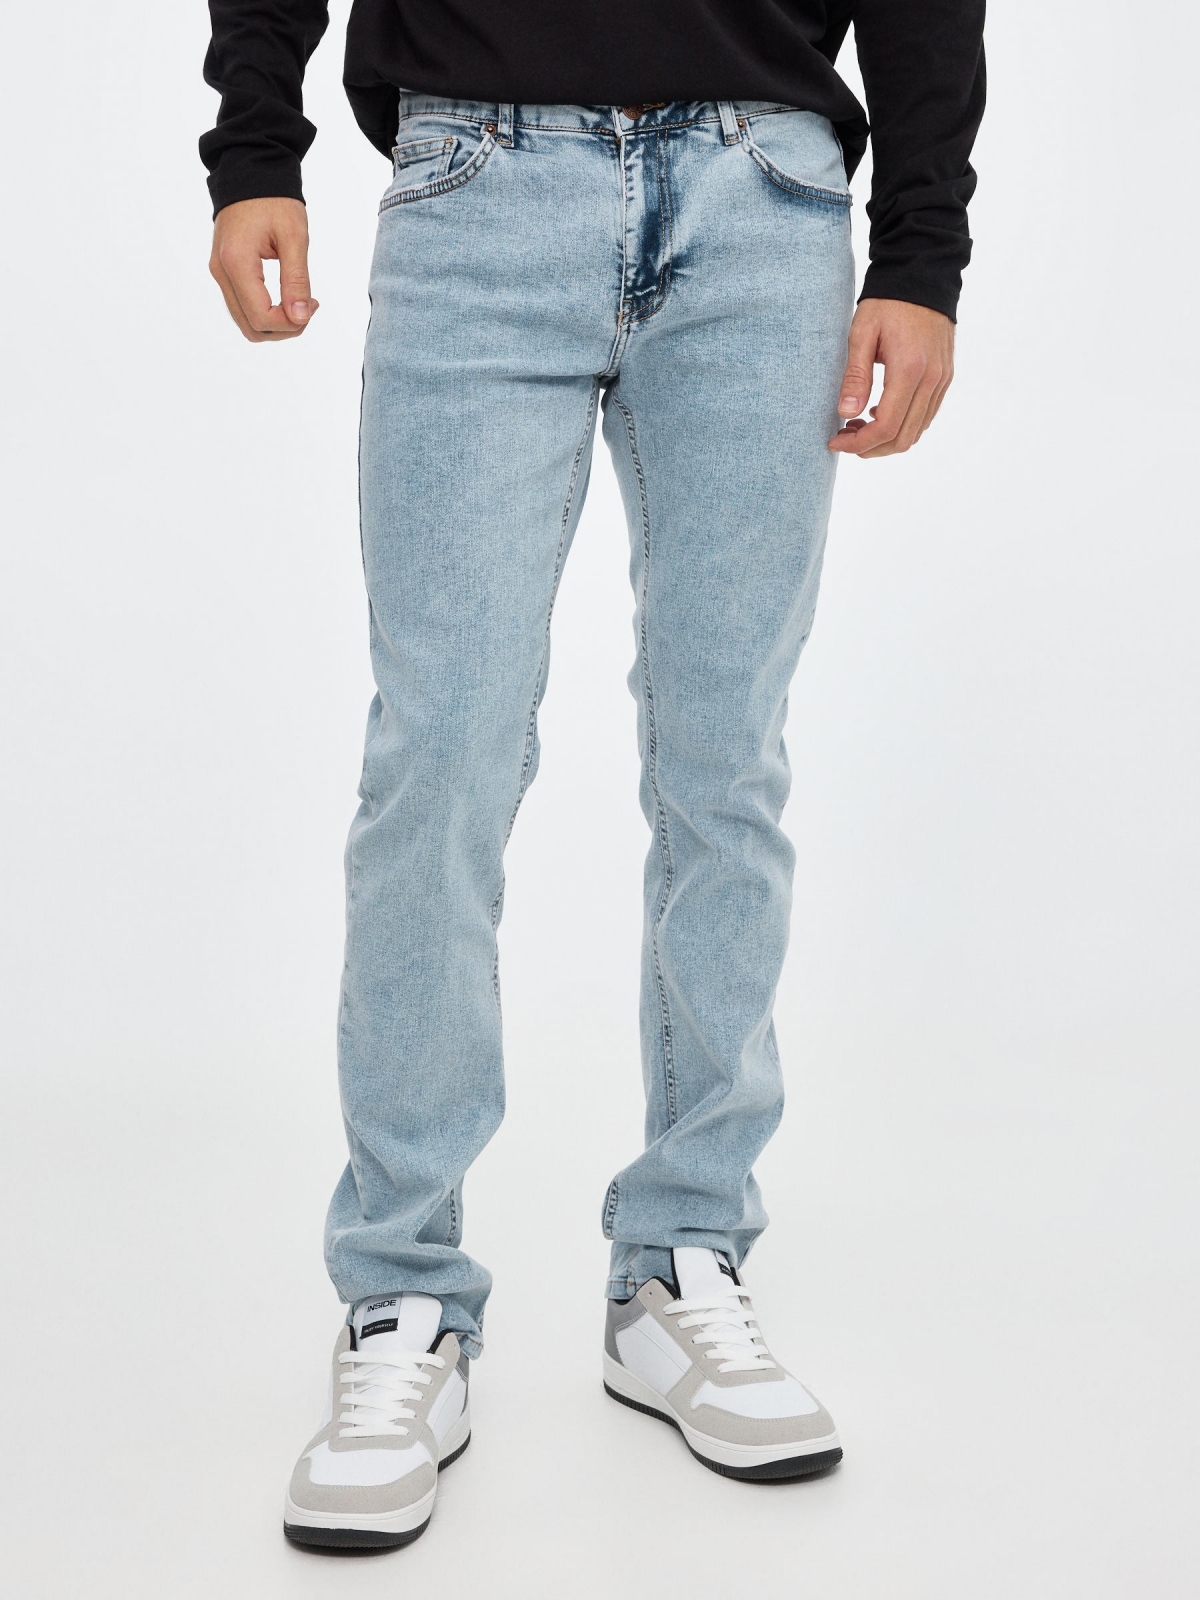 Jeans regular azul claro vista media frontal